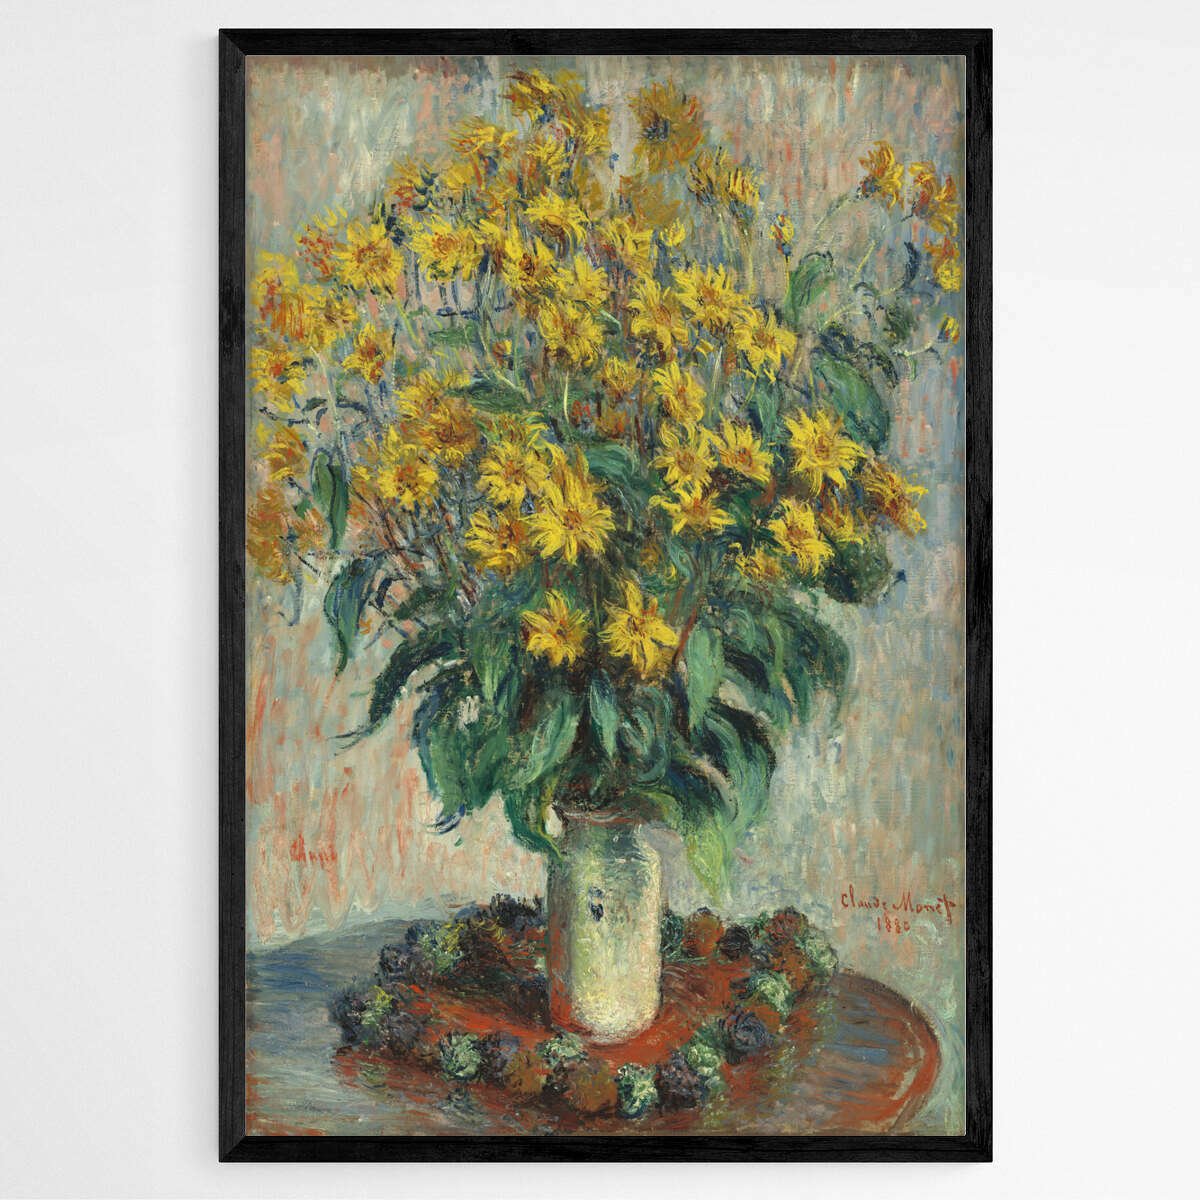 Jerusalem Artichoke Flowers by Claude Monet | Claude Monet Wall Art Prints - The Canvas Hive